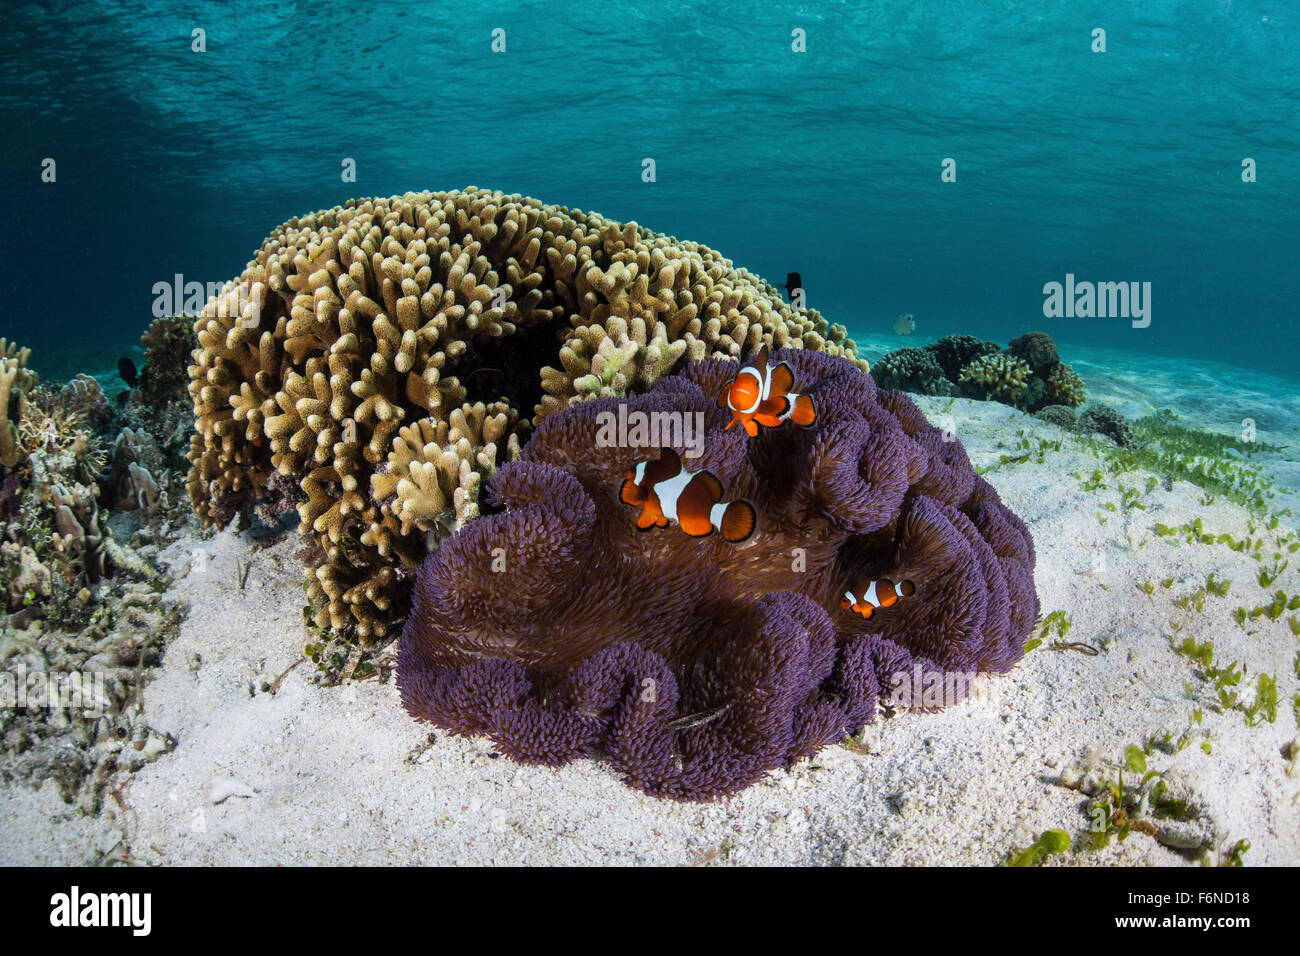 Falso clownfish (Amphiprion ocellaris) nuotare vicino a loro anemone host in Alor, Indonesia. Questa remota regione è nota per la sua beau Foto Stock